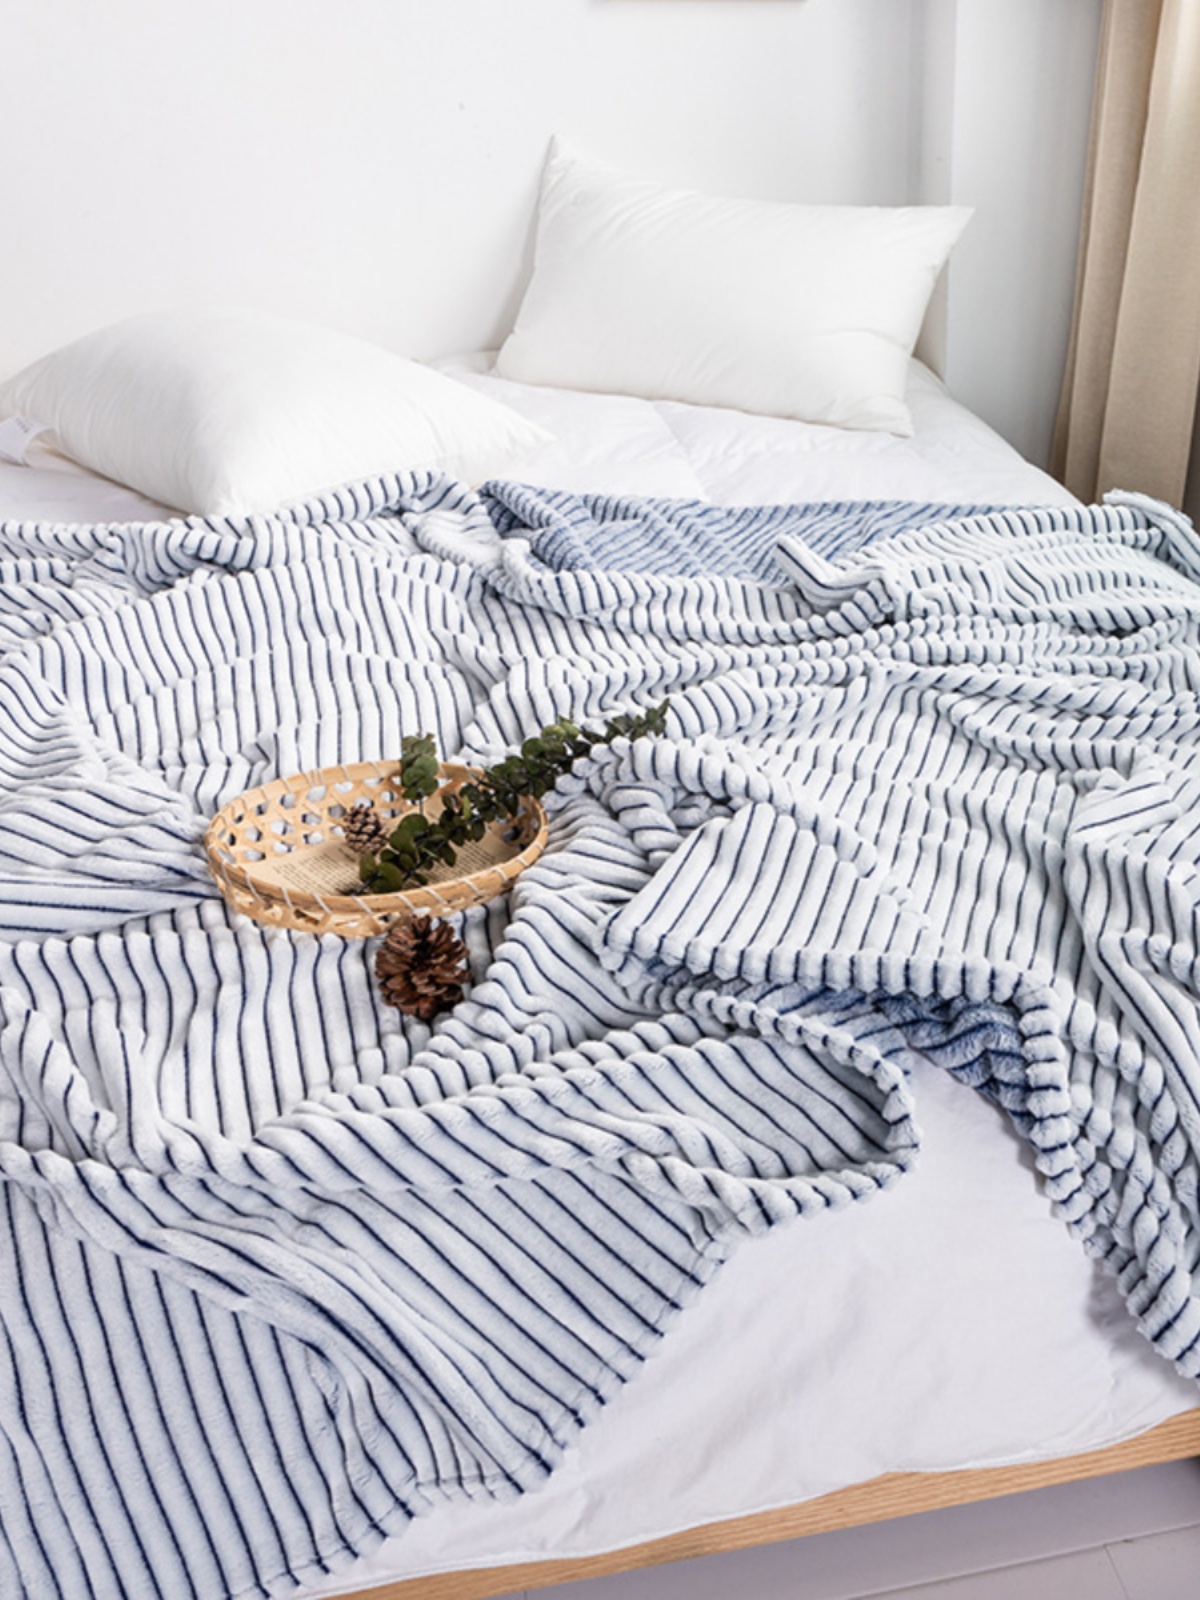 簡約現代條紋背印絨毛毯單層居家保暖四季通用適用沙發床通用空間